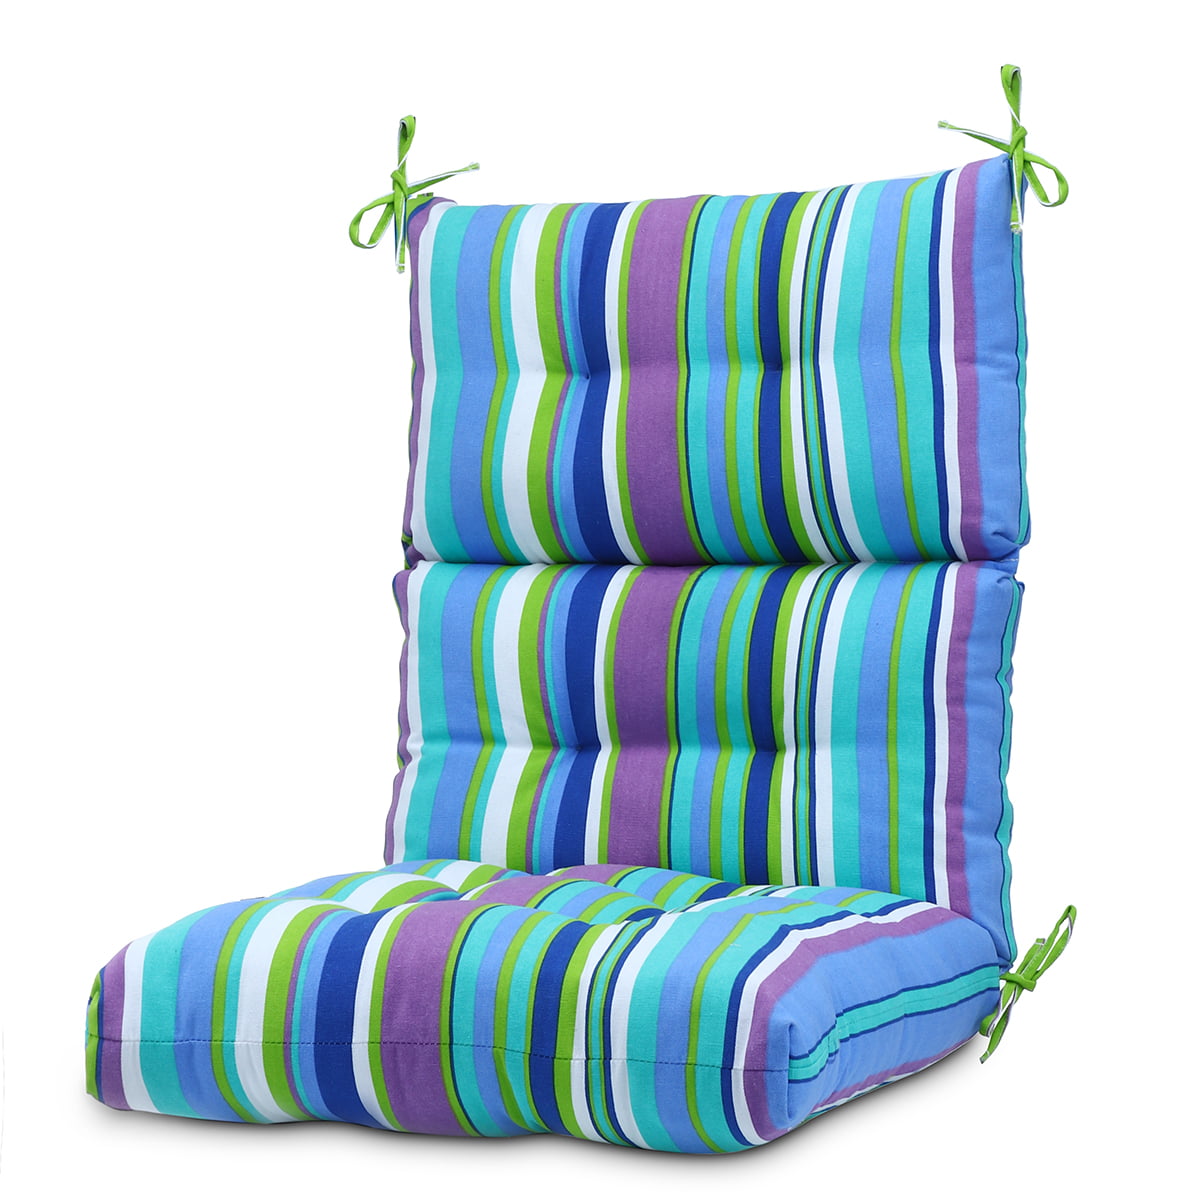 Romhouse Outdoor Patio Chair Cushion Set of 4 for Garden Decor 